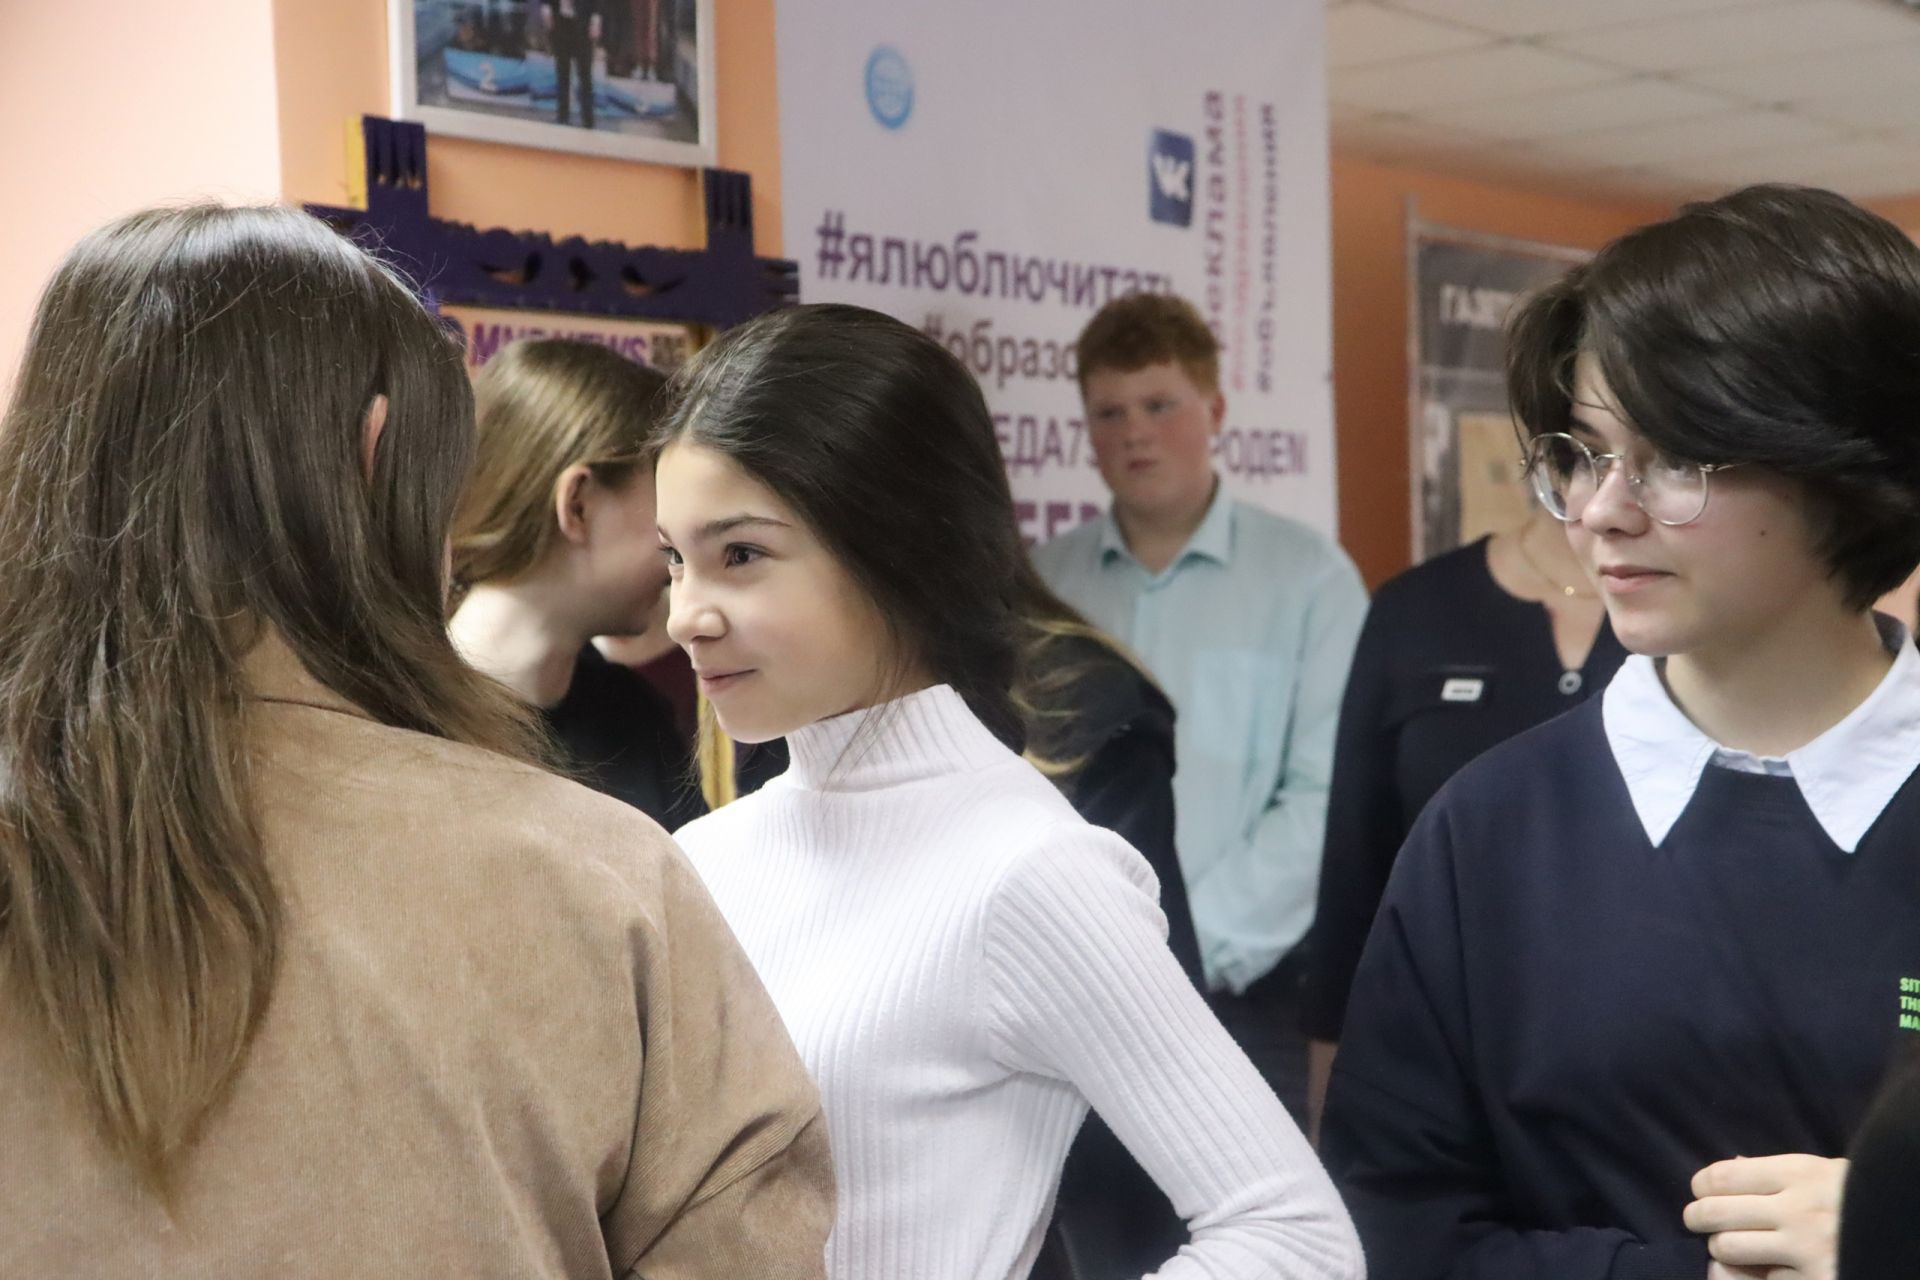 В образовательных учреждениях Менделеевска появятся школьные газеты